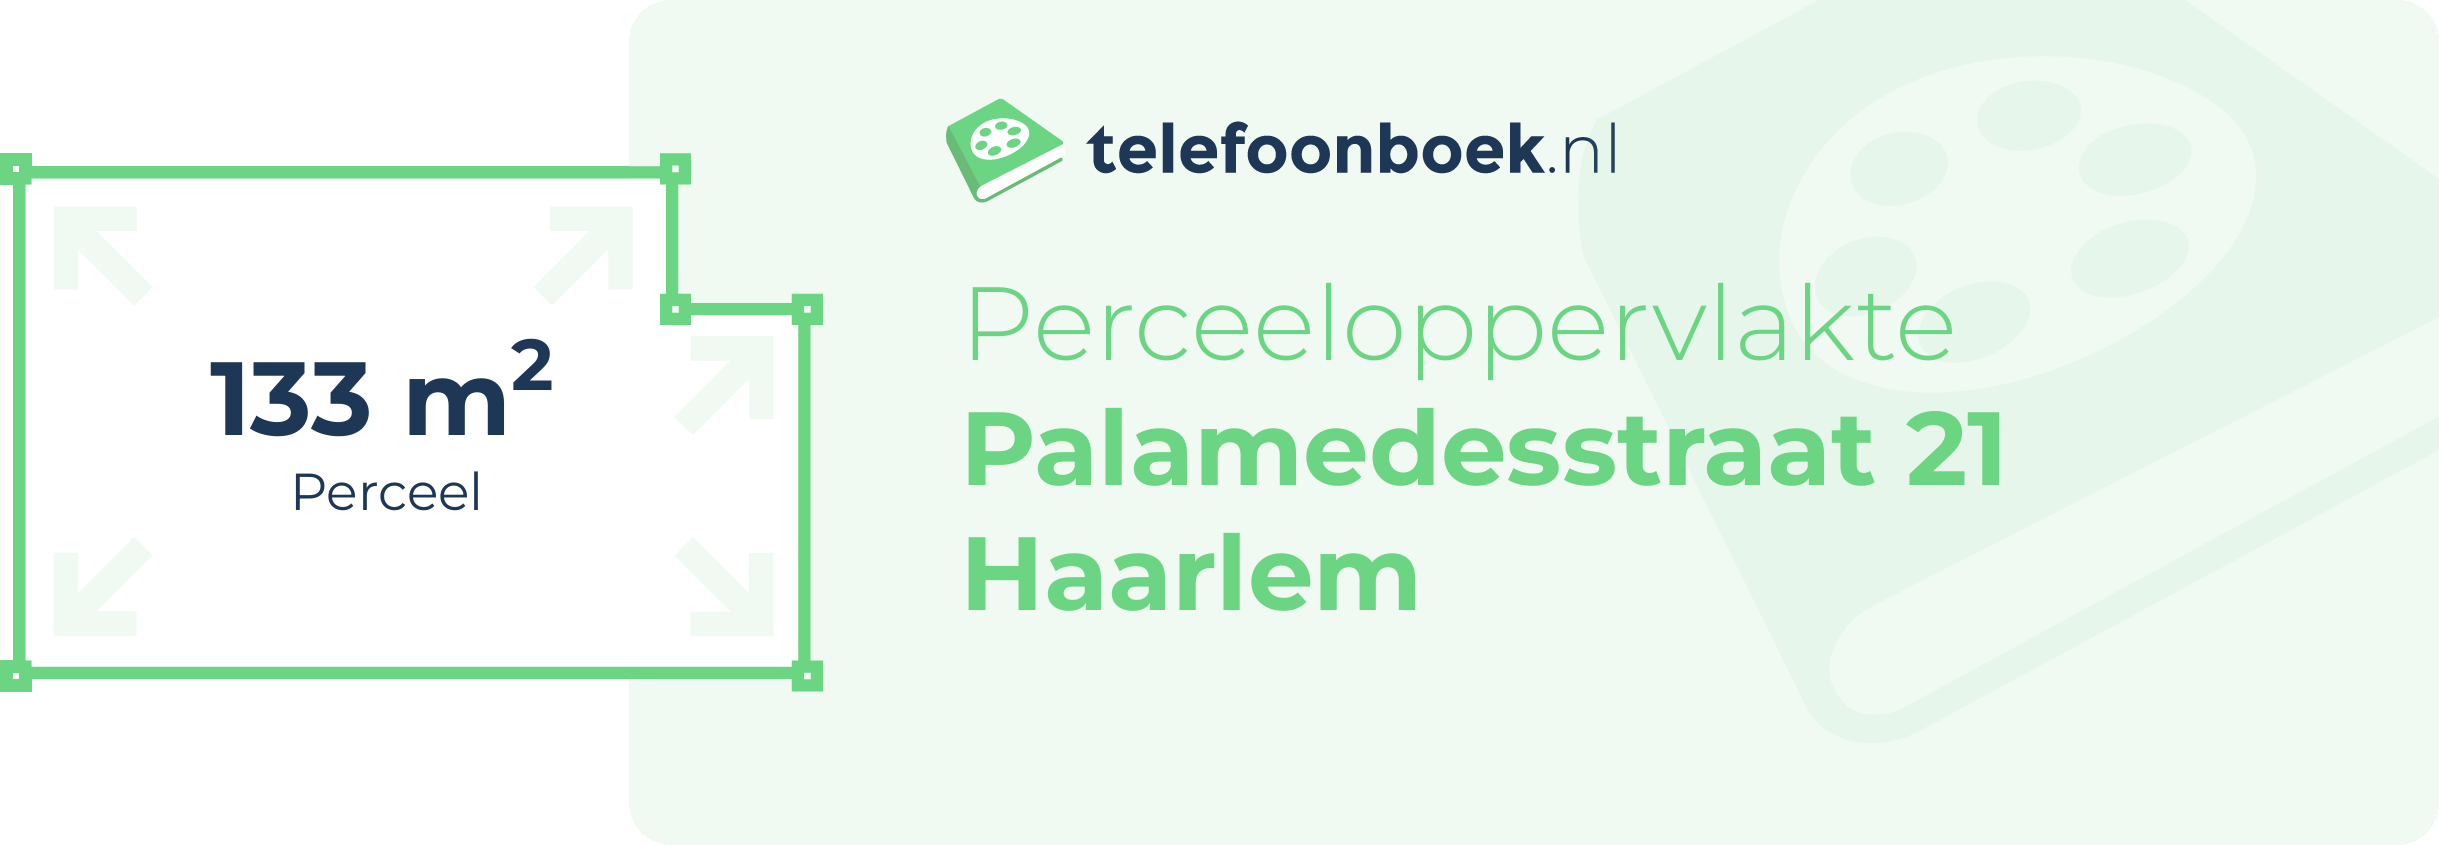 Perceeloppervlakte Palamedesstraat 21 Haarlem